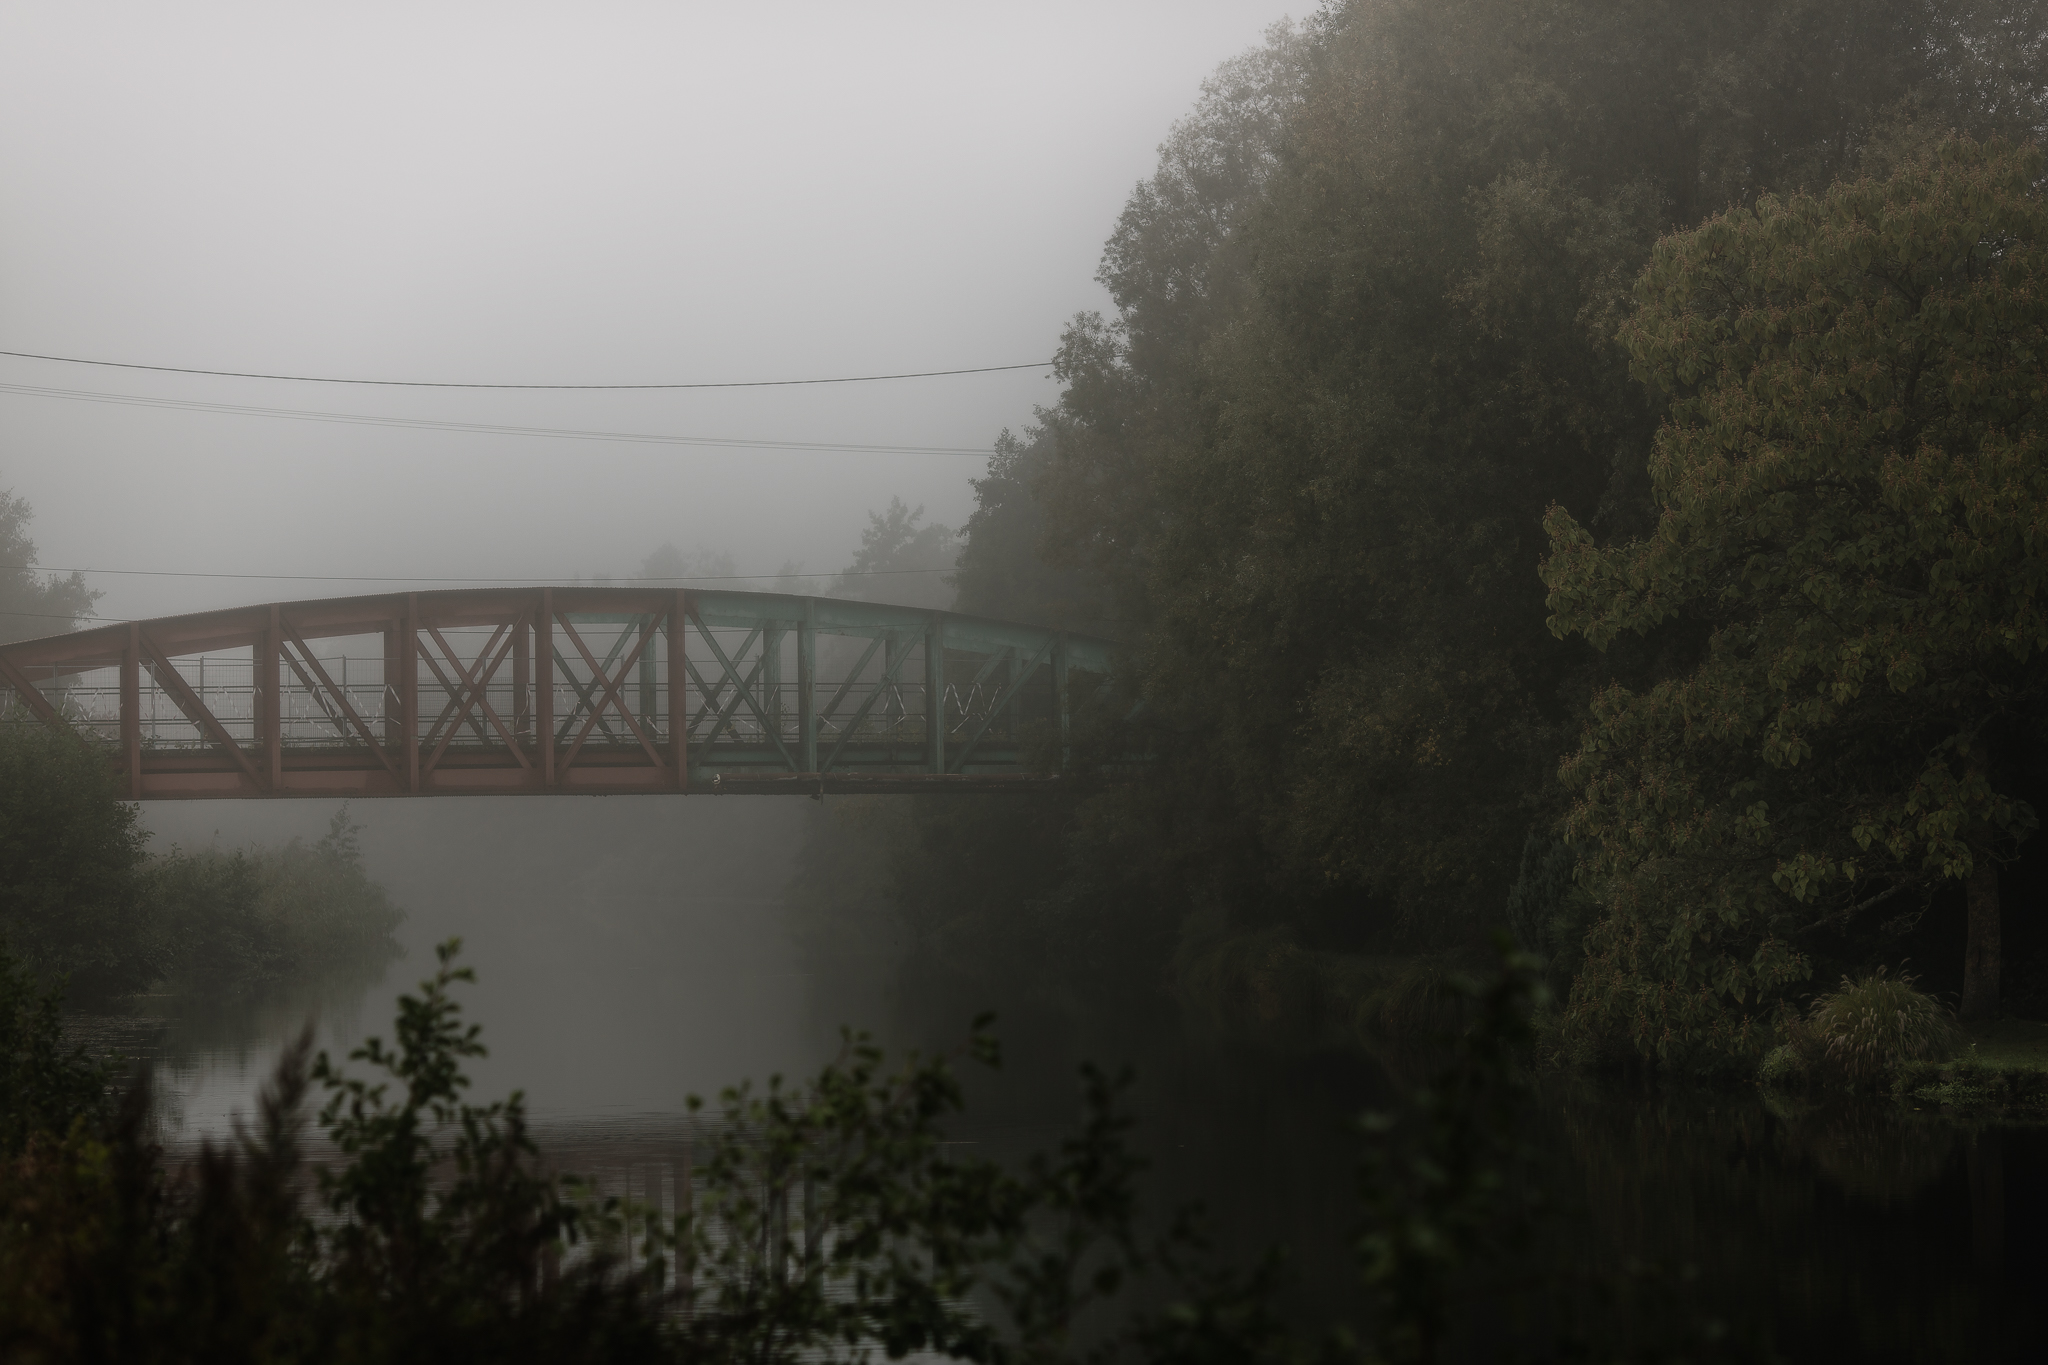 Photo paysage d'une forêt et d'un pont à l'architecture unique dans la brume par Quentin Pruvost